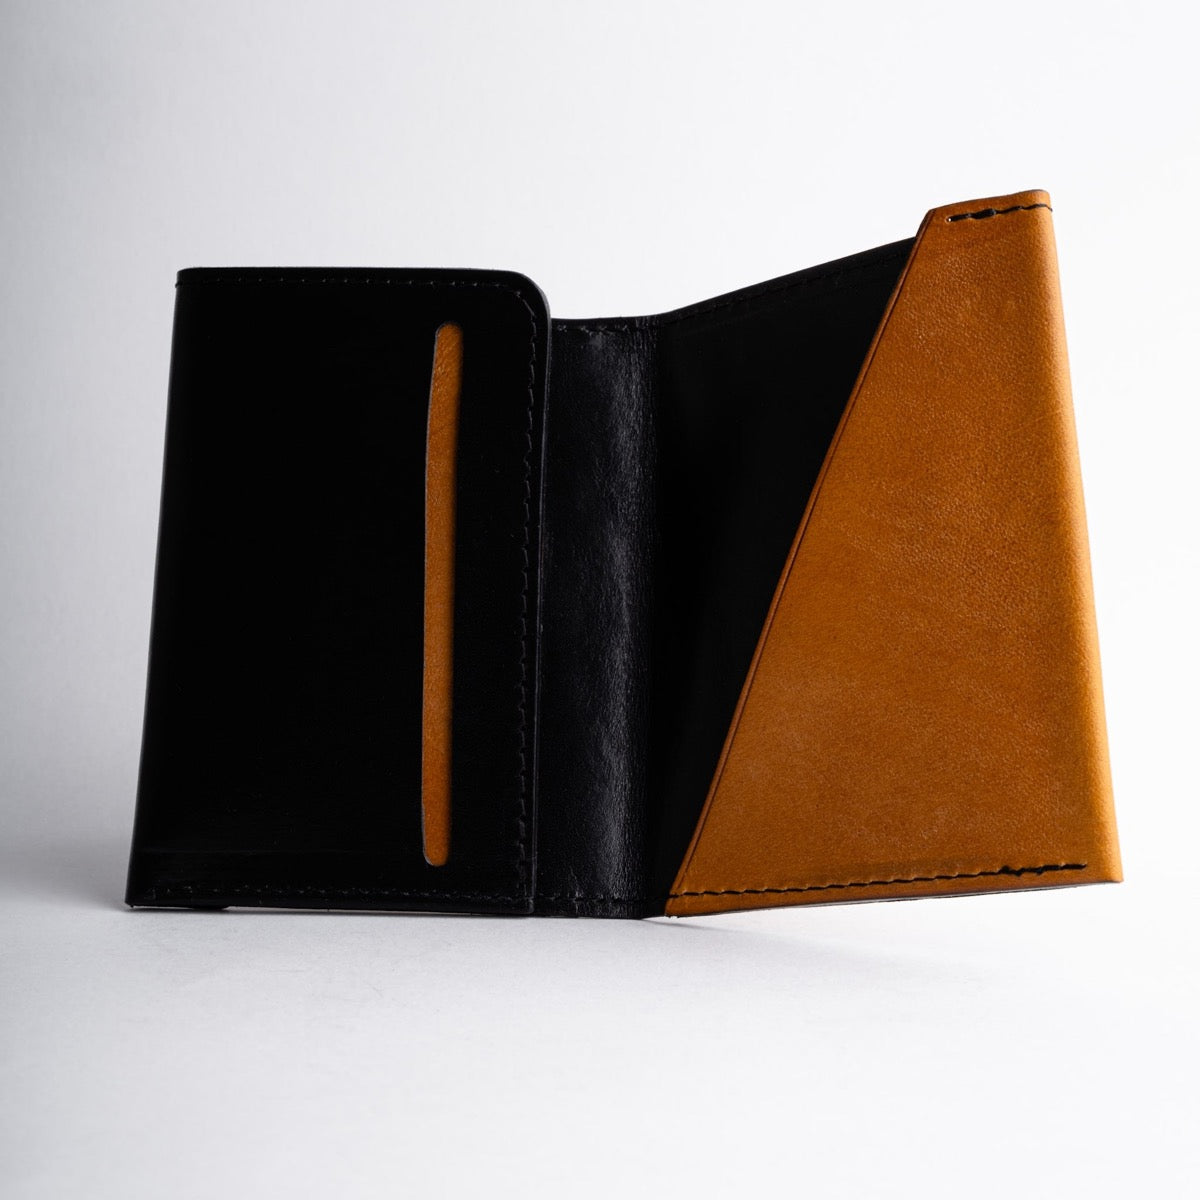 oak-bark-leather-wallet-inside_c9b50406-ff3e-48d2-b01f-a7a952537de9.jpg